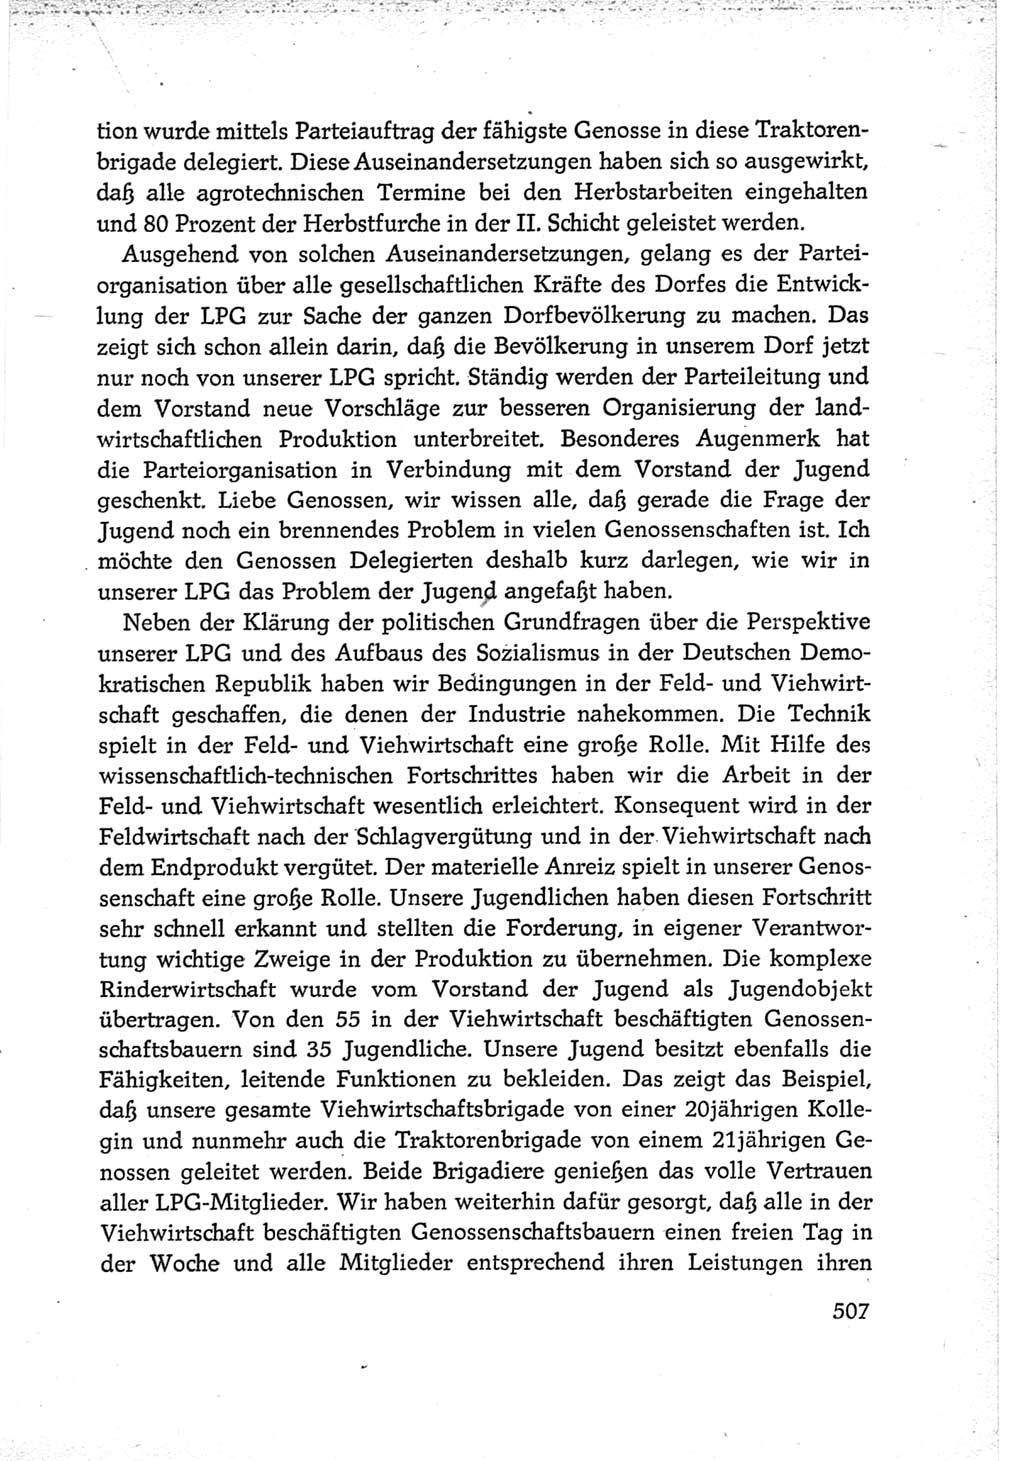 Protokoll der Verhandlungen des Ⅵ. Parteitages der Sozialistischen Einheitspartei Deutschlands (SED) [Deutsche Demokratische Republik (DDR)] 1963, Band Ⅲ, Seite 507 (Prot. Verh. Ⅵ. PT SED DDR 1963, Bd. Ⅲ, S. 507)